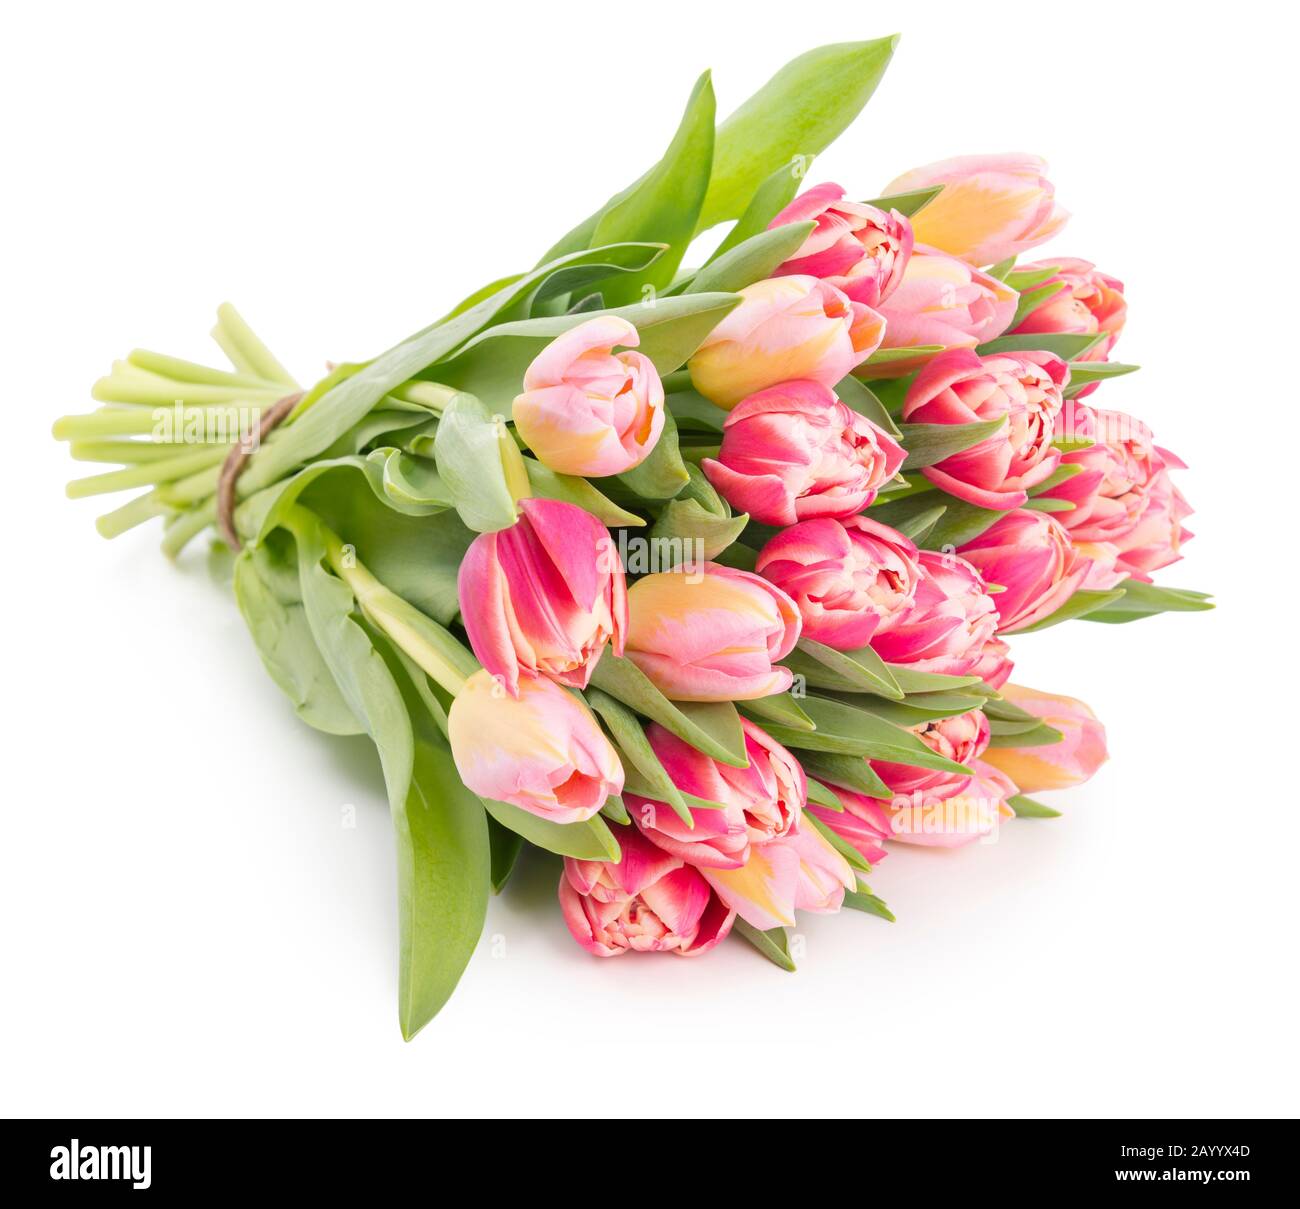 Wunderschönes, frisches Blumenstrauß mit Tulpen aus der Feder, isoliert auf weißem Hintergrund mit weichem Schatten Stockfoto